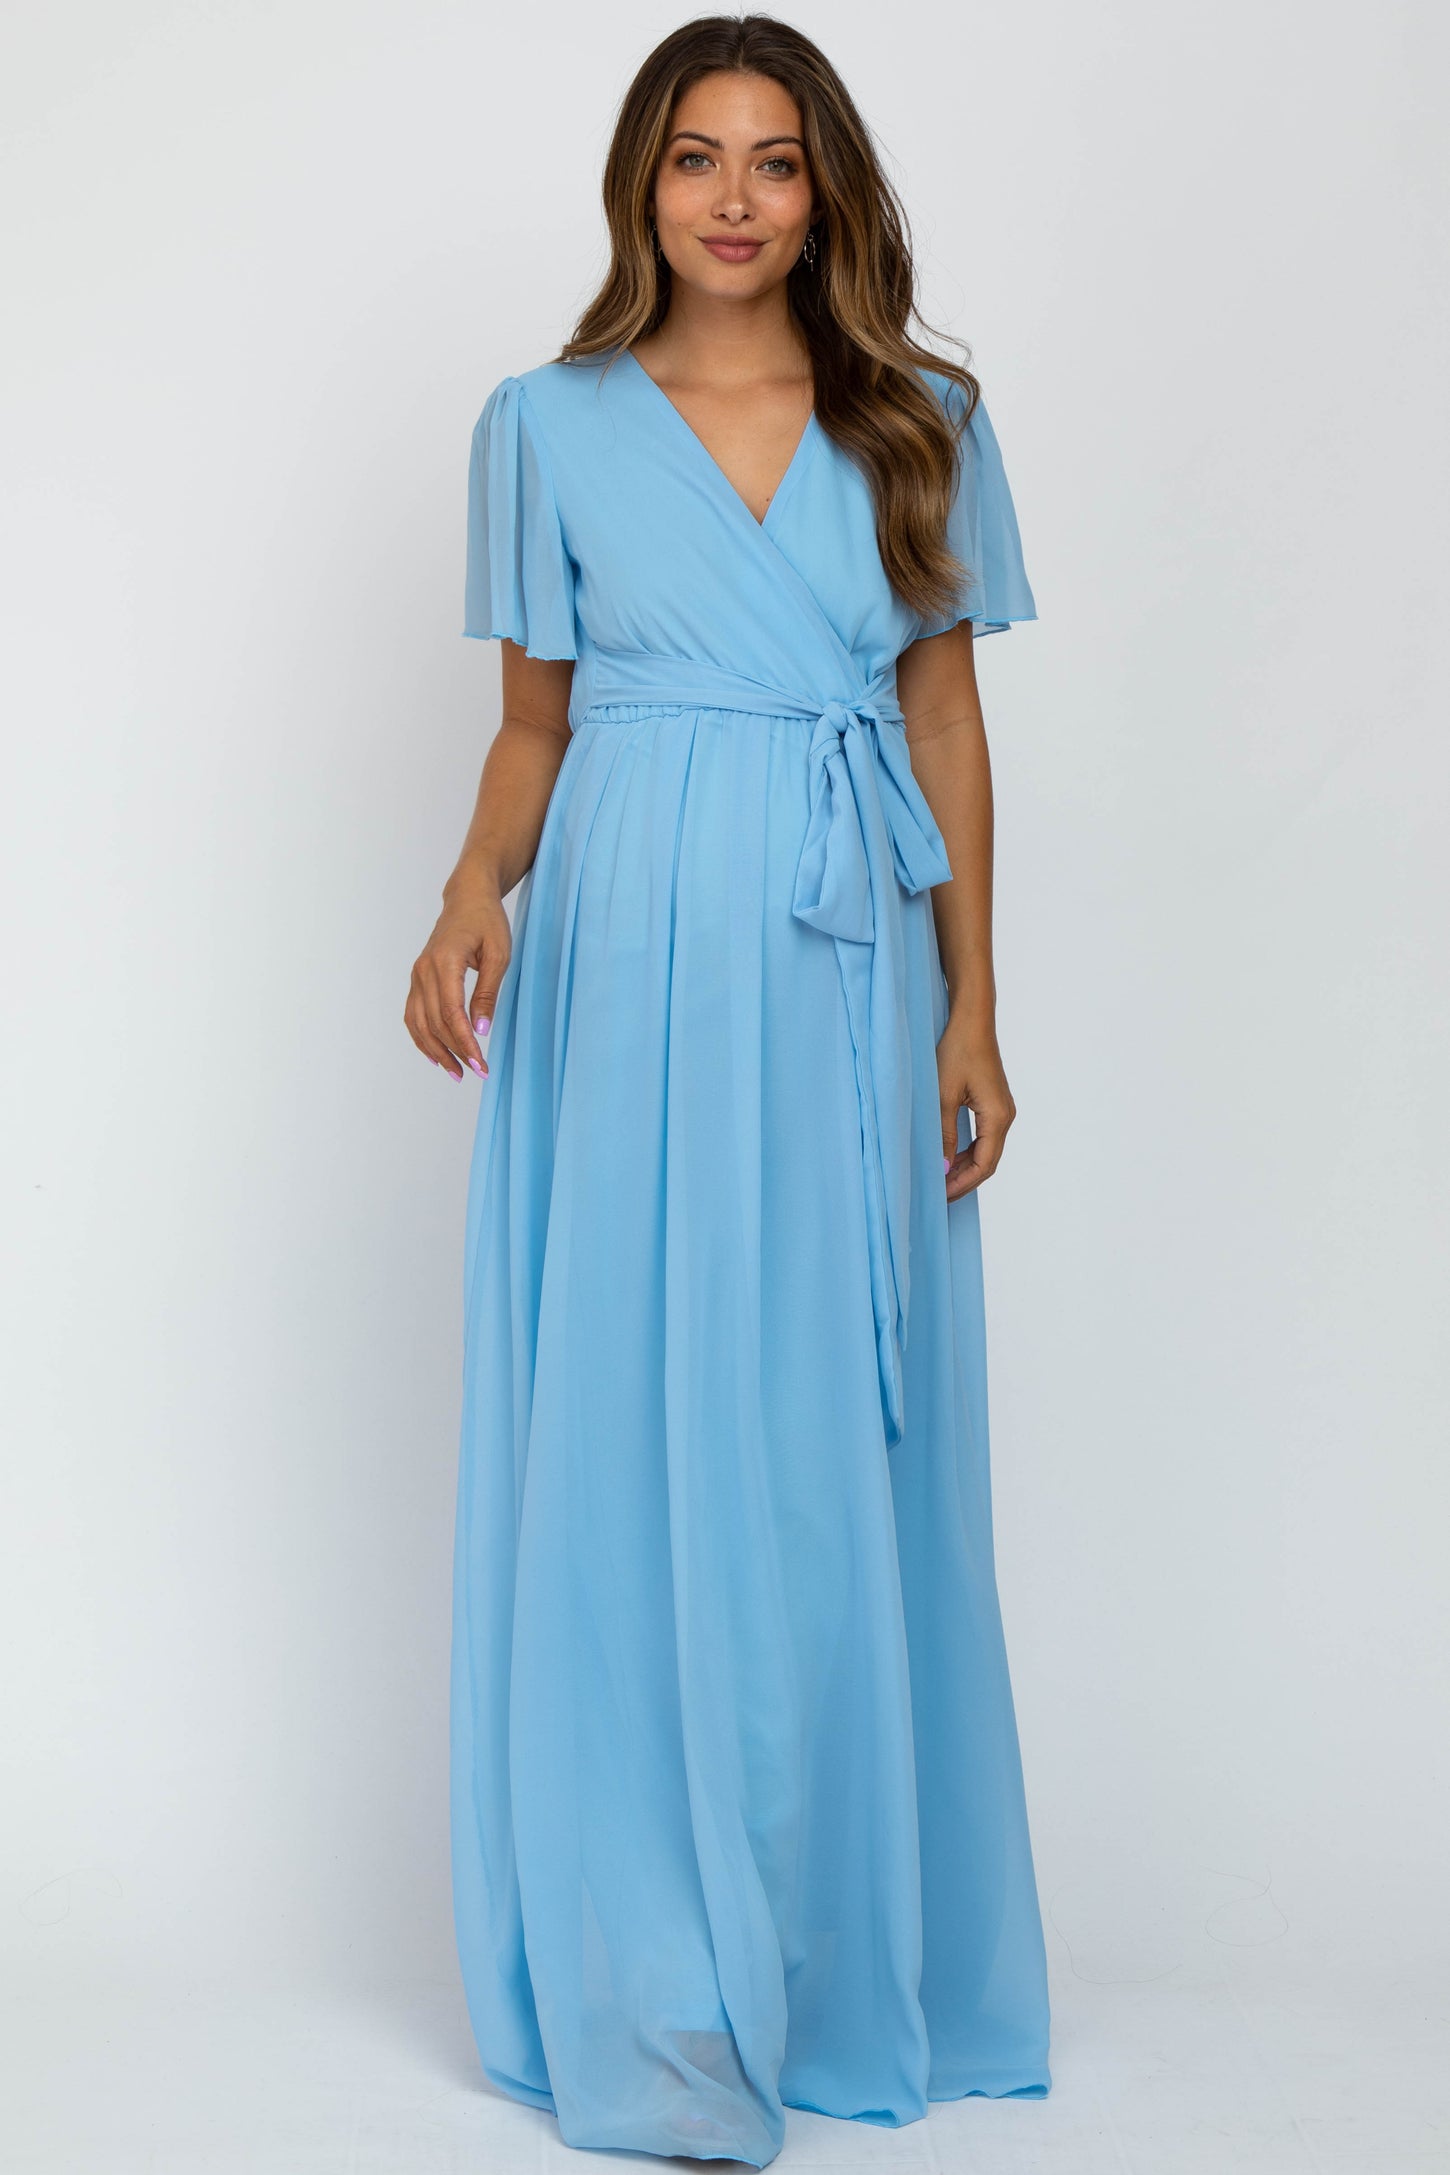 Light Blue Chiffon Short Sleeve Maternity Maxi Dress– PinkBlush